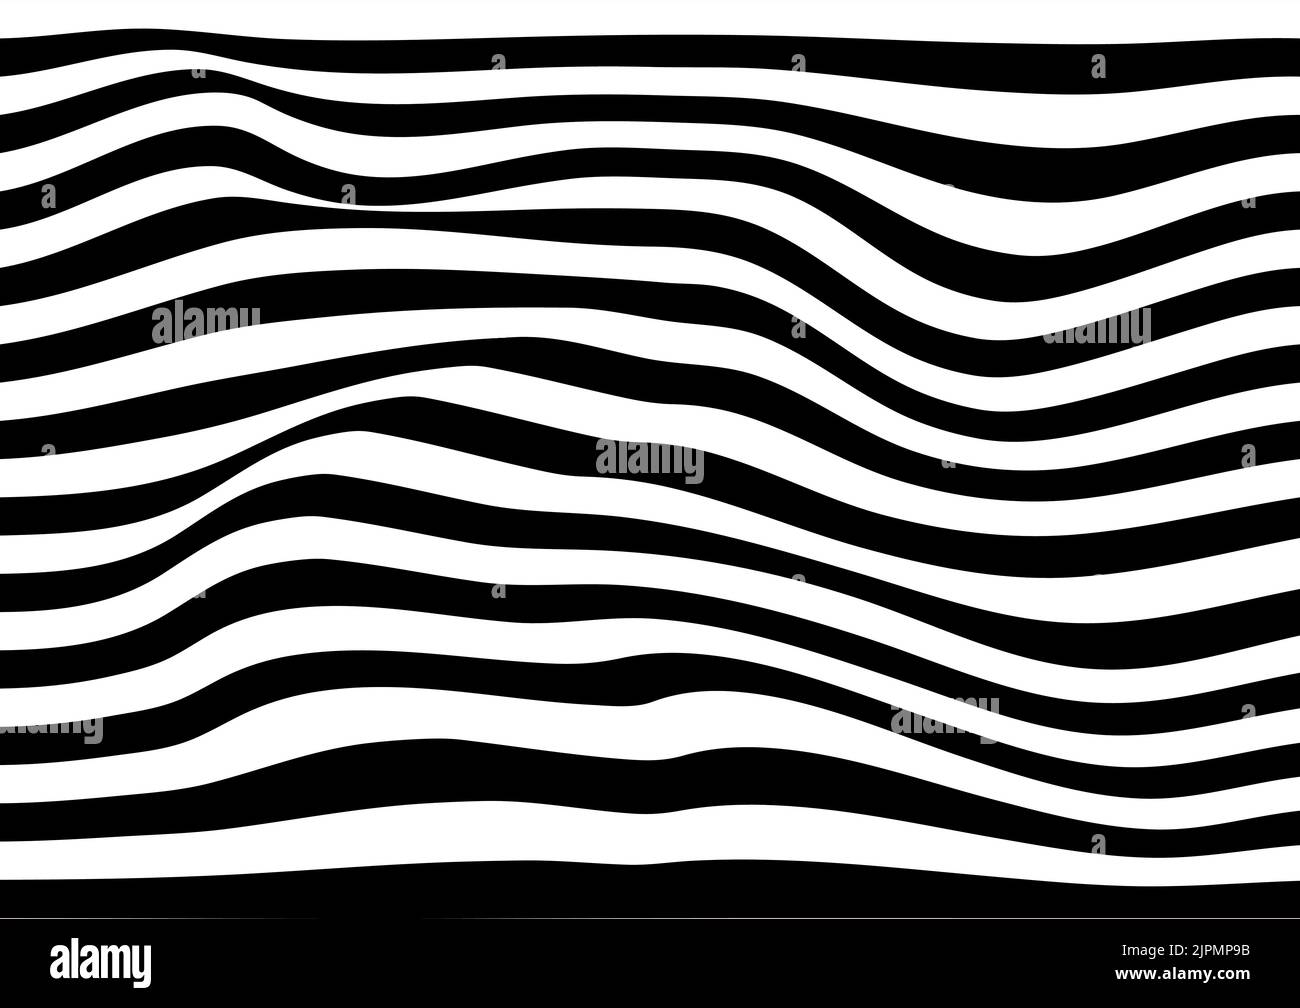 Abstrakt Hintergrund Hintergrund wellig Verzerrung Fluss Textur verbinden Grafik Design modernen Stil Vorlage Vektor Illustration Stock Vektor